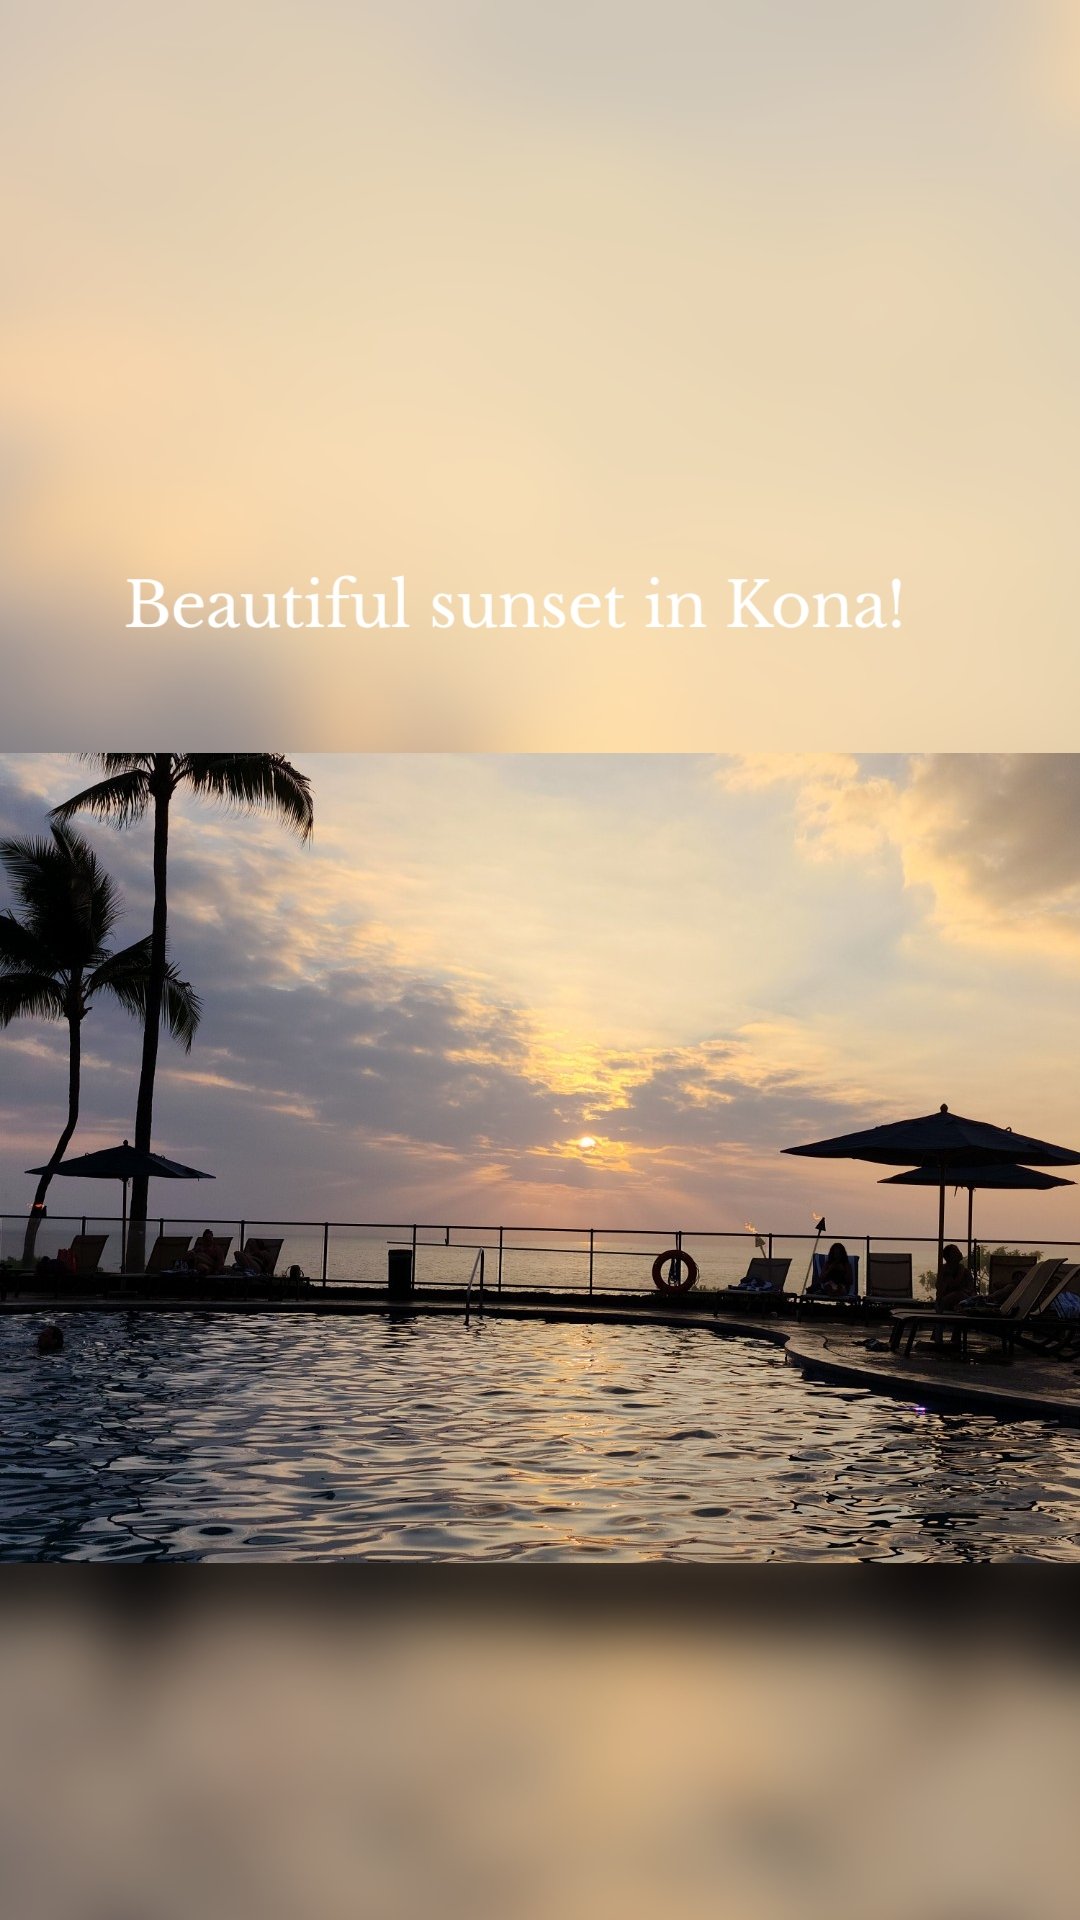 Beautiful sunset in Kona!